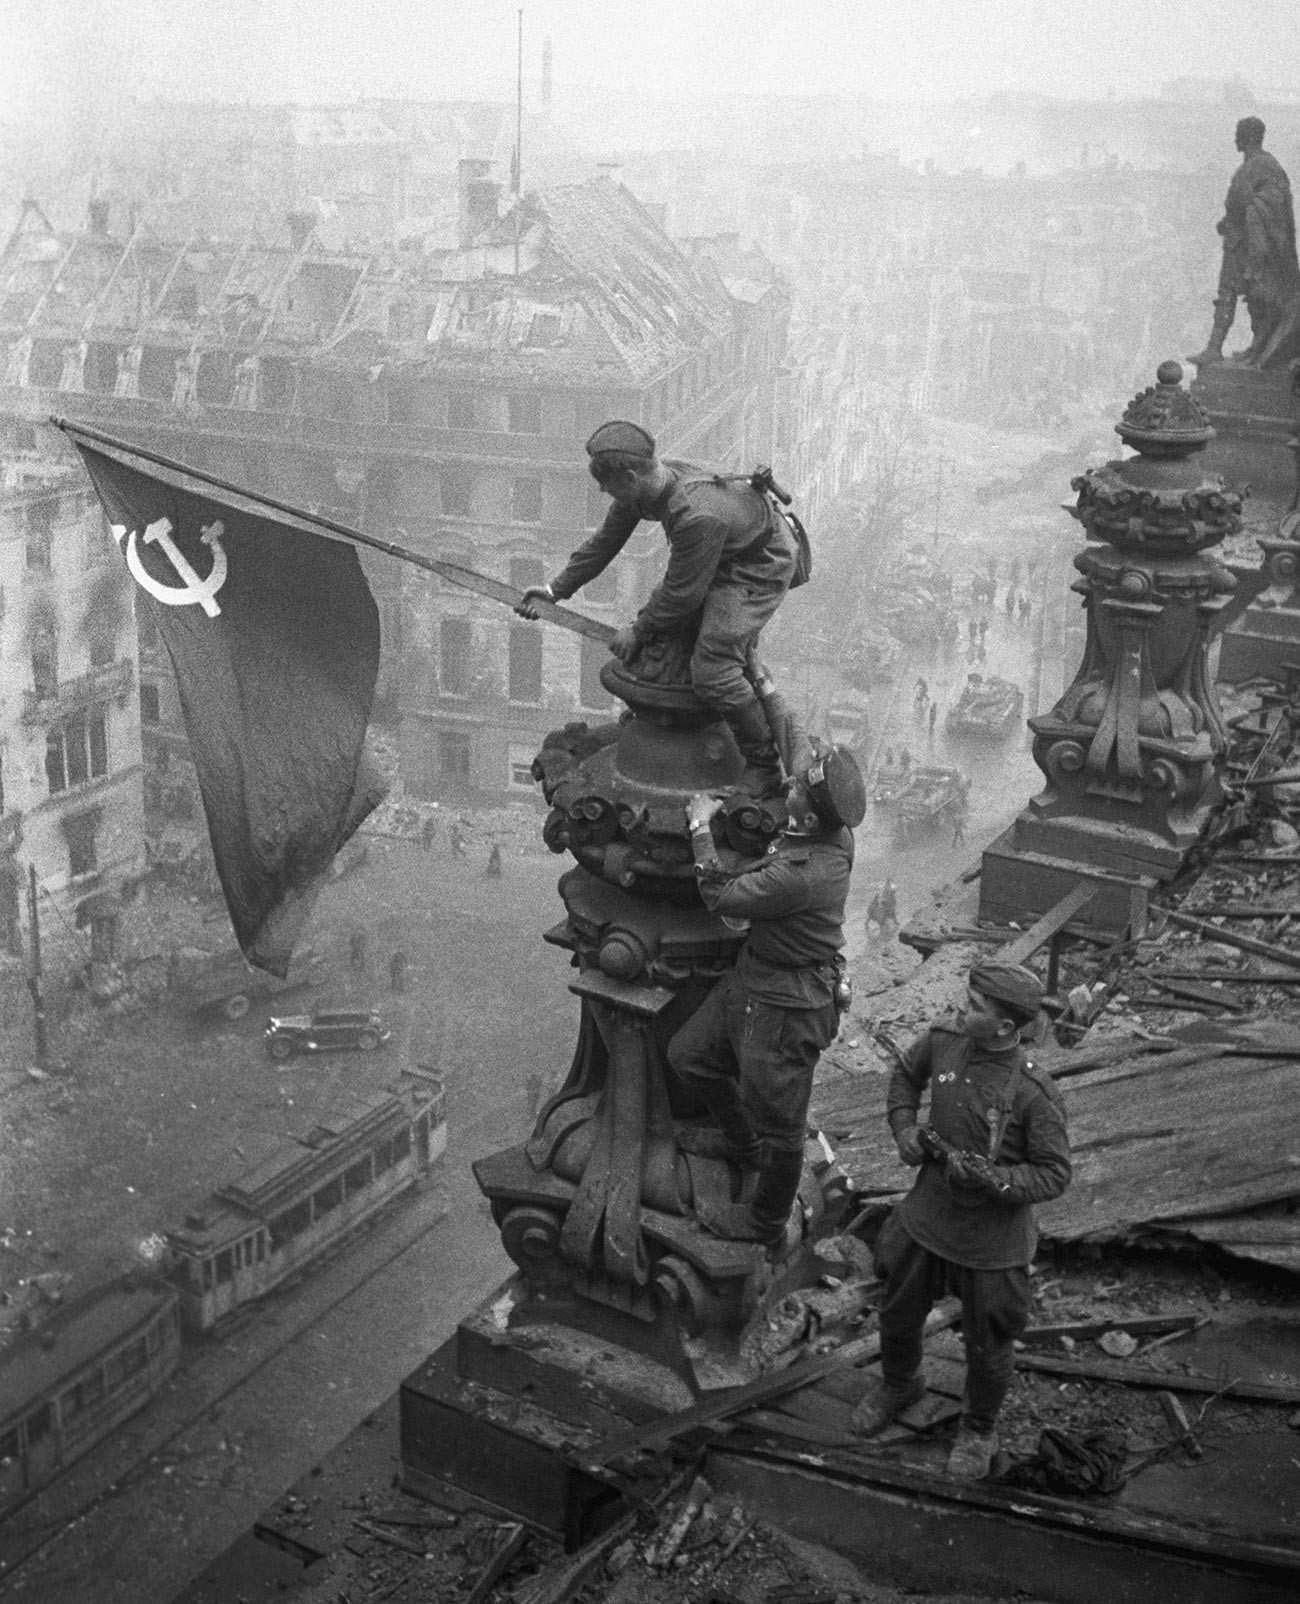 Велики Отаџбински рат 1941-1945. Застава Победе на згради Рајхстага у Берлину.